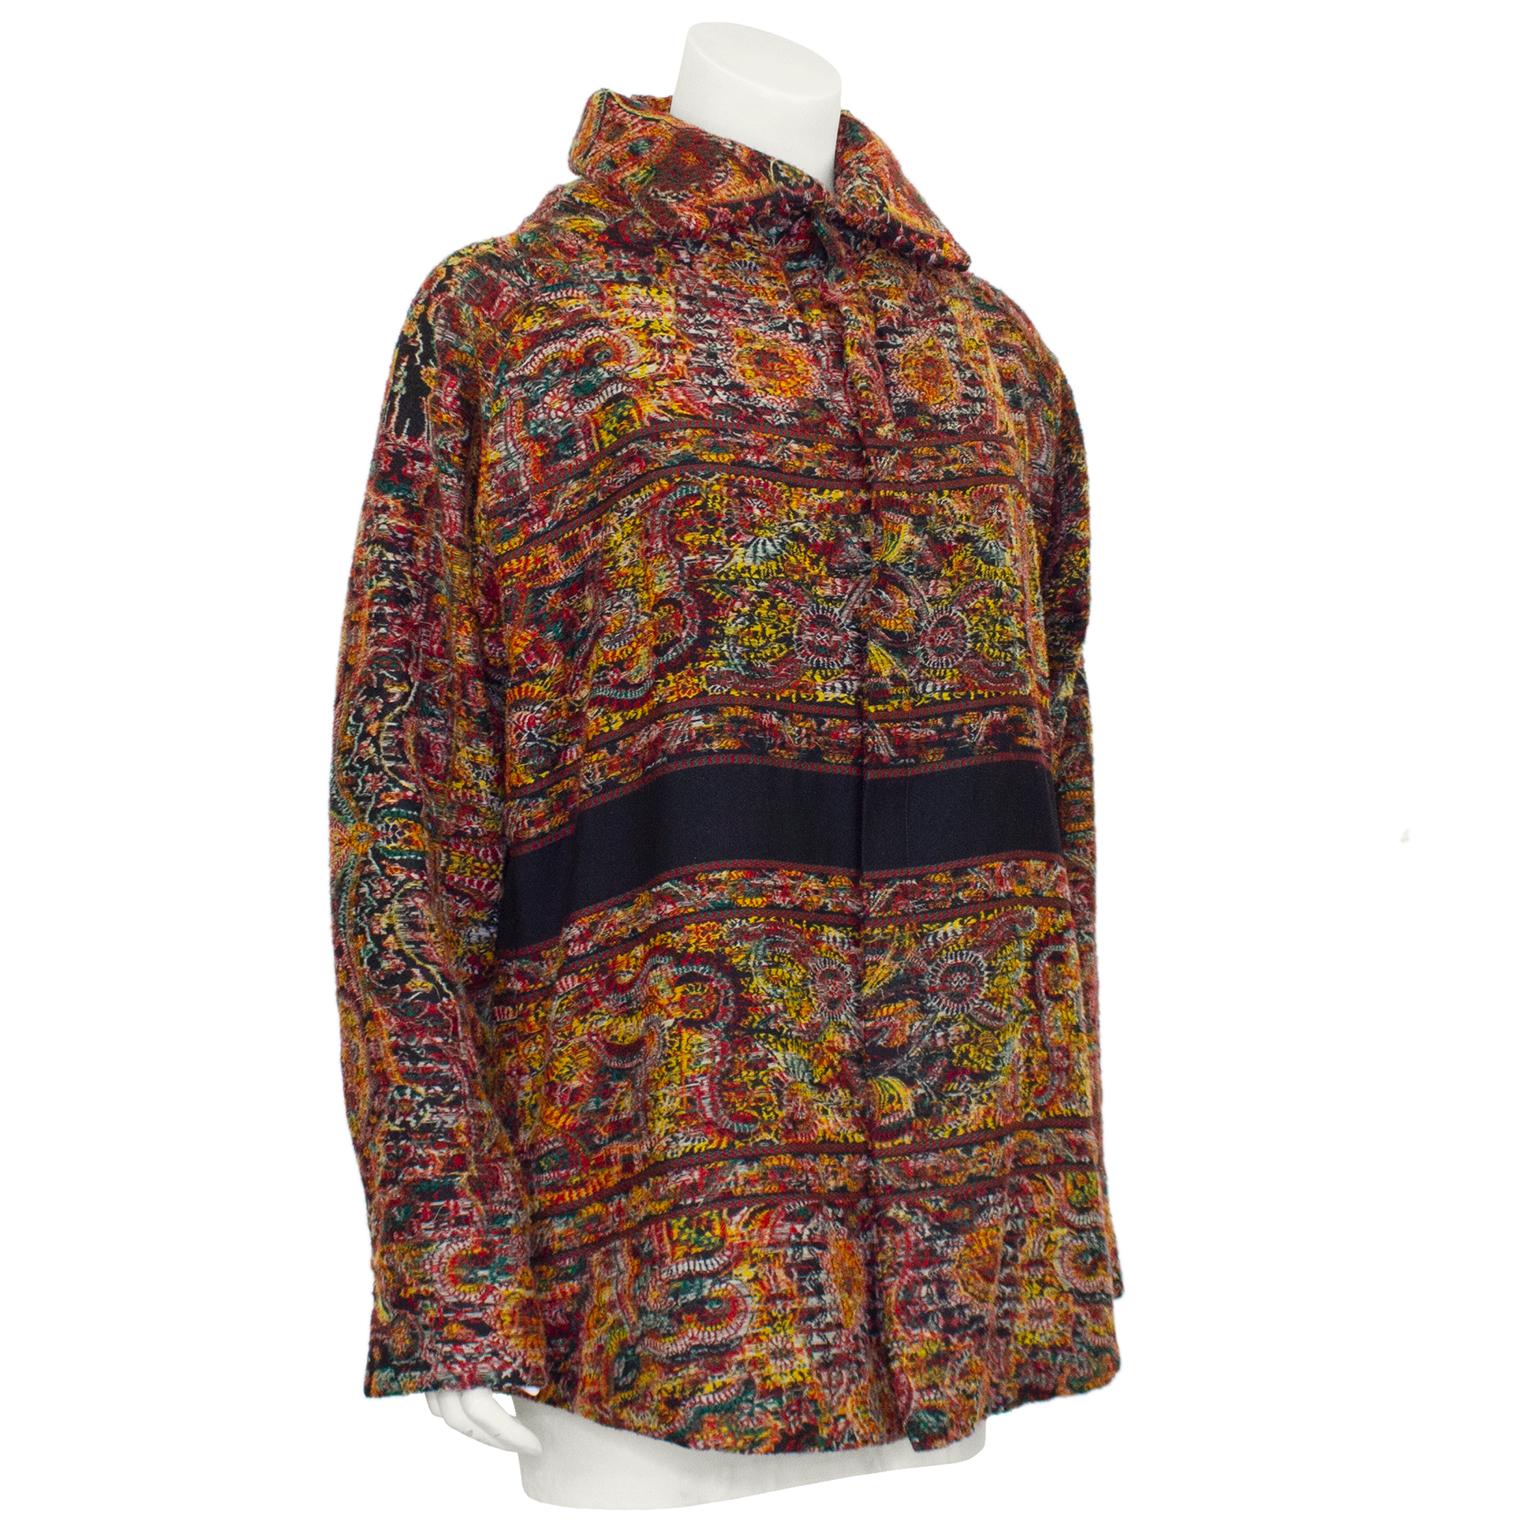 Unisex-Jacke von Yohji Yamamoto aus den 1990er Jahren. Rotes, schwarzes, gelbes, grünes und weißes abstraktes Wollmuster. gepolsterter Kragen und Passe. Dünne horizontale rote und grüne Streifen über Brust, Taille und Hüfte. Dicker schwarzer